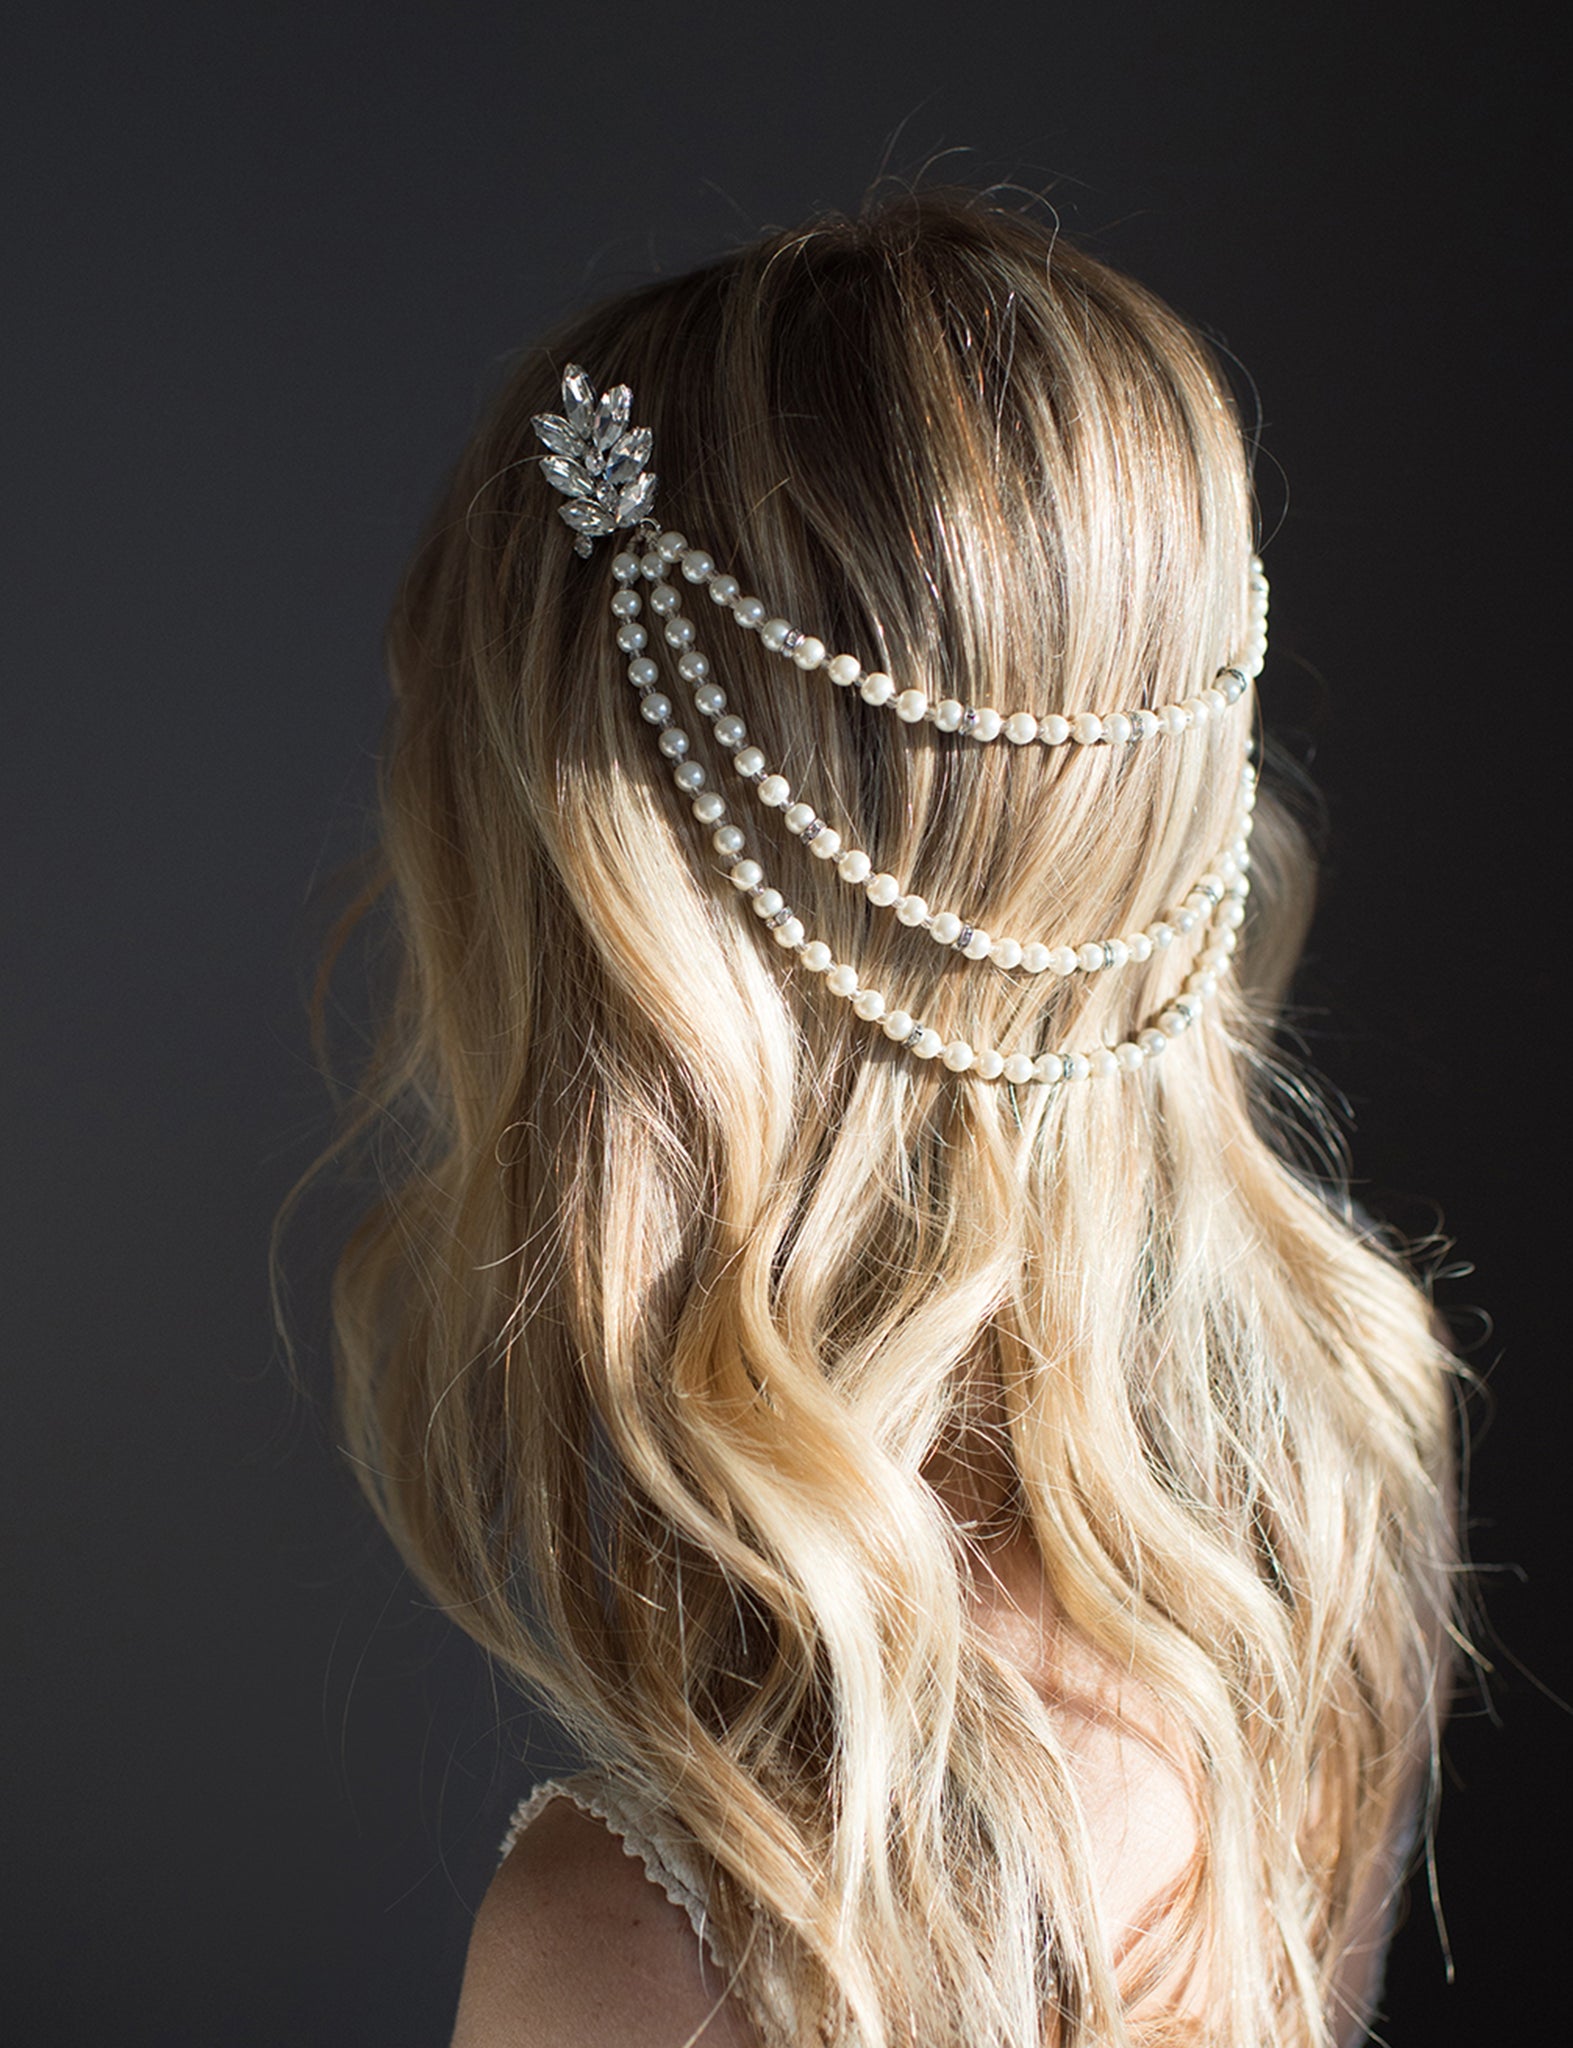 Pearl Hair Pins, Pearl Hair Chain, Princess Hair Accessories, Gold Hair  Chain, Pearl Headpiece, Bridal Hair, for Wedding Daily Accessories 